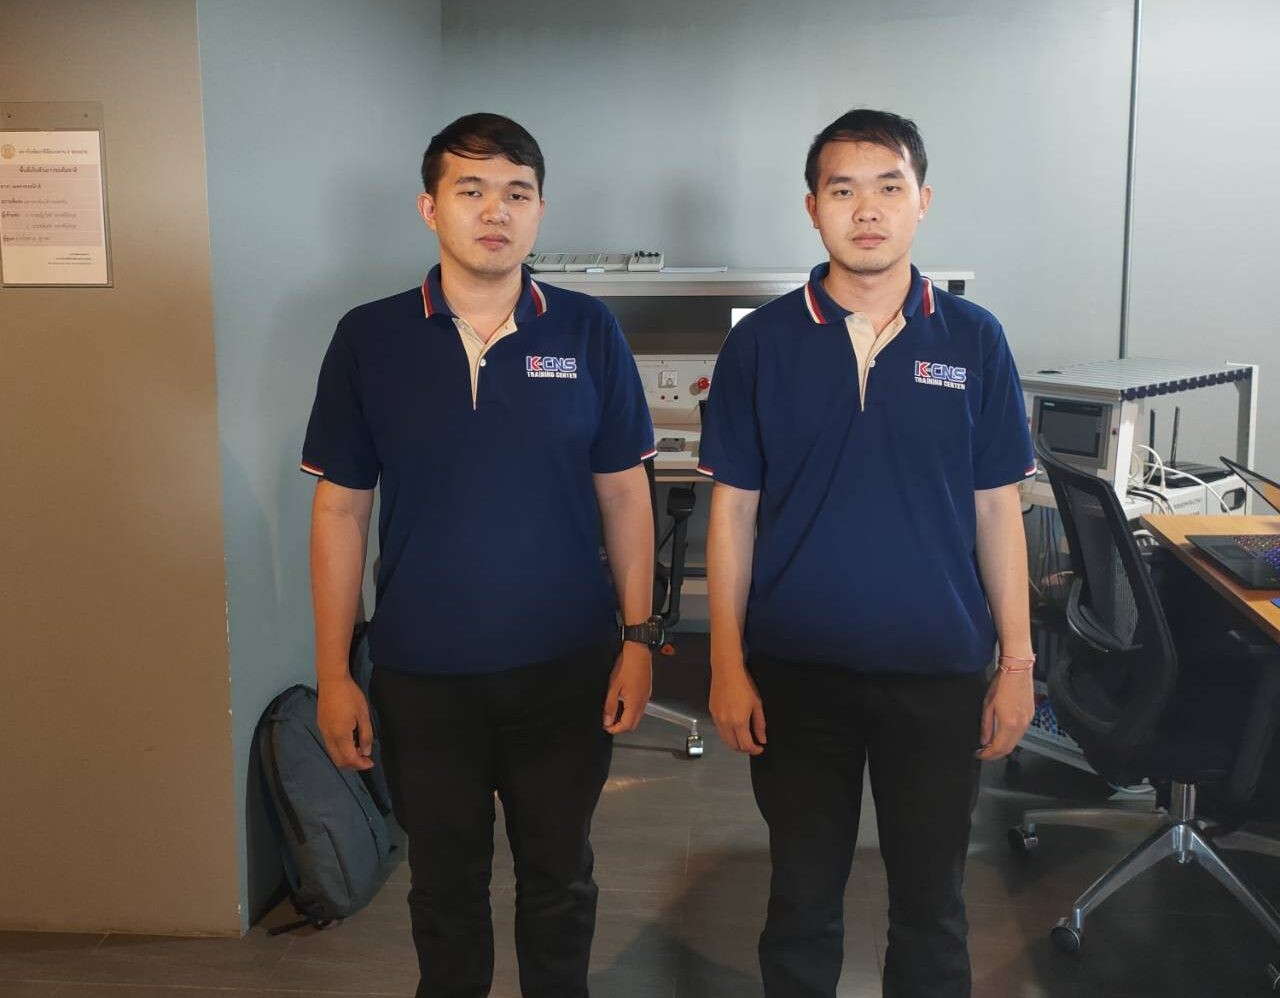 สองพี่น้อง ตัวแทนประเทศไทยจากม.ราชมงคลล้านนา ลงสนามอุ่นเครื่องรายการ World Skills Challenge รั้งอันดับ 8 จาก 25 ทีมทั่วโลก